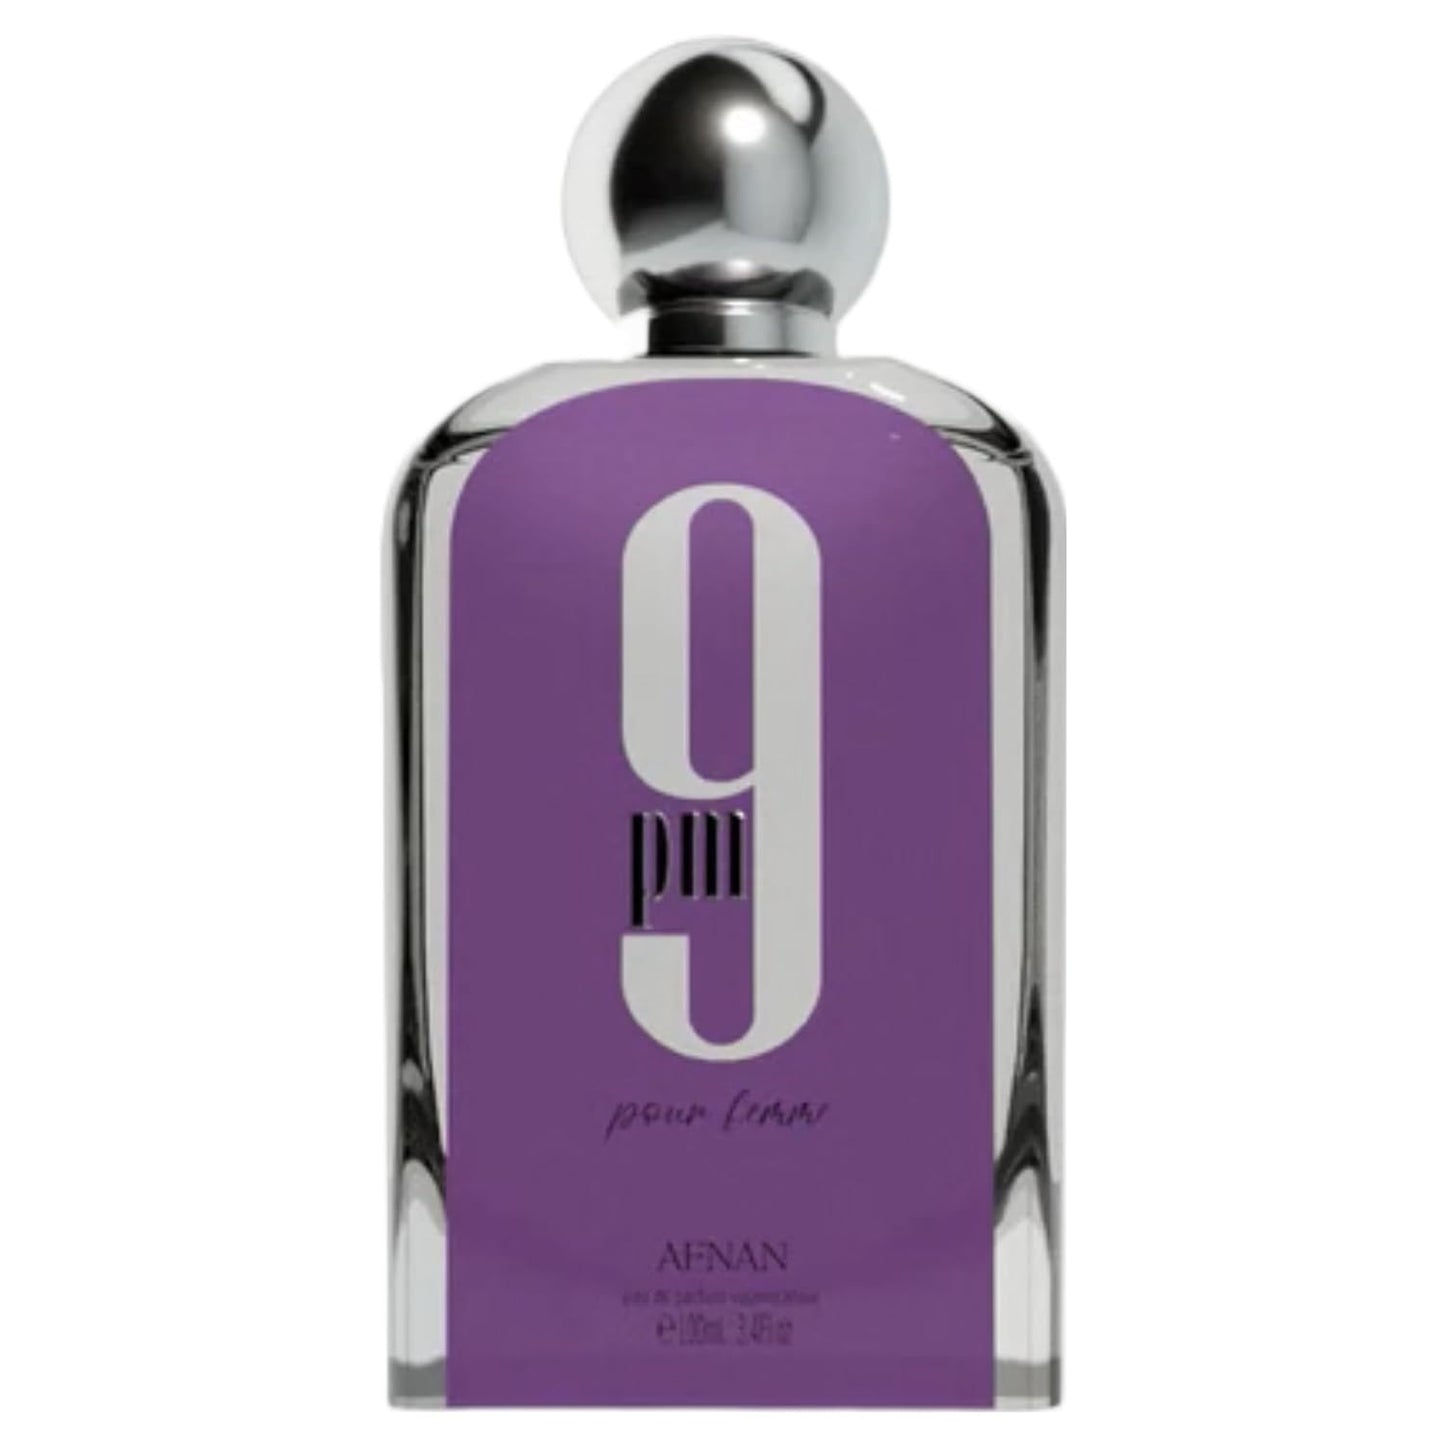 Afnan 9 Pm women Eau De Parfum Spray 100 ml.